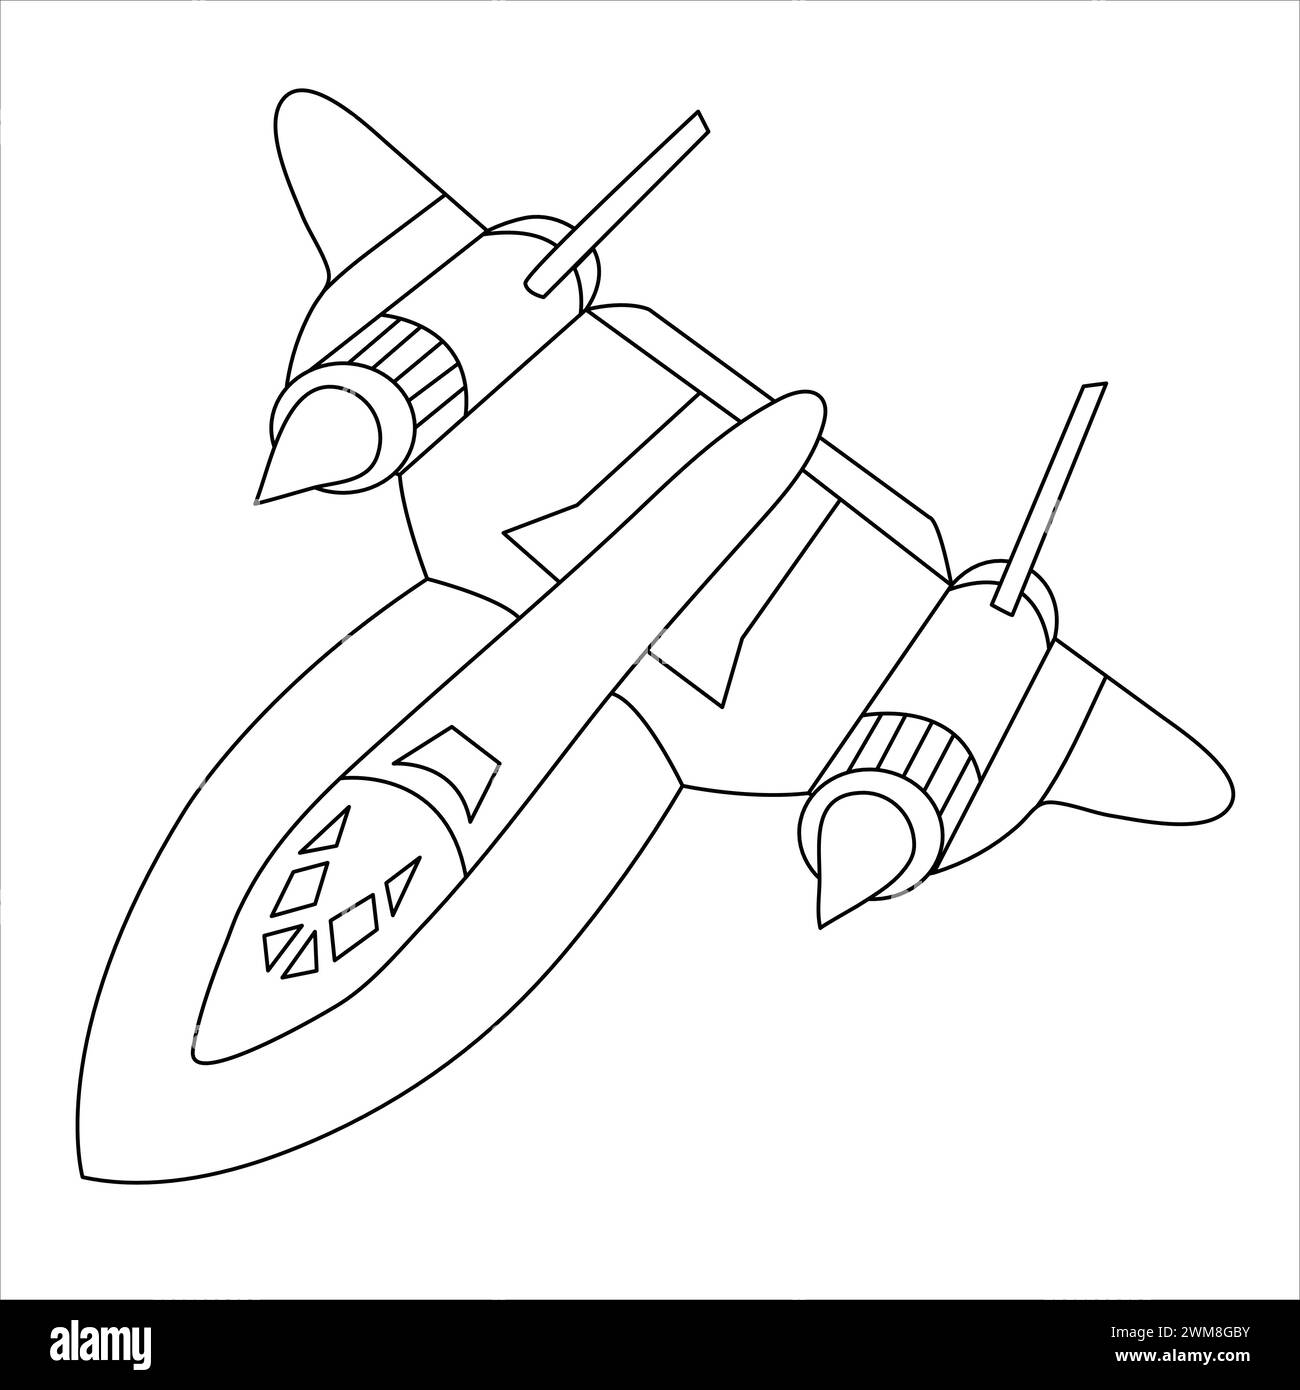 Aerei militari Lockheed SR-71 Blackbird Coloring Book per adulti e bambini. Cartoon Airplane isolato su sfondo bianco. Disegno di Fighter Jet Illustrazione Vettoriale